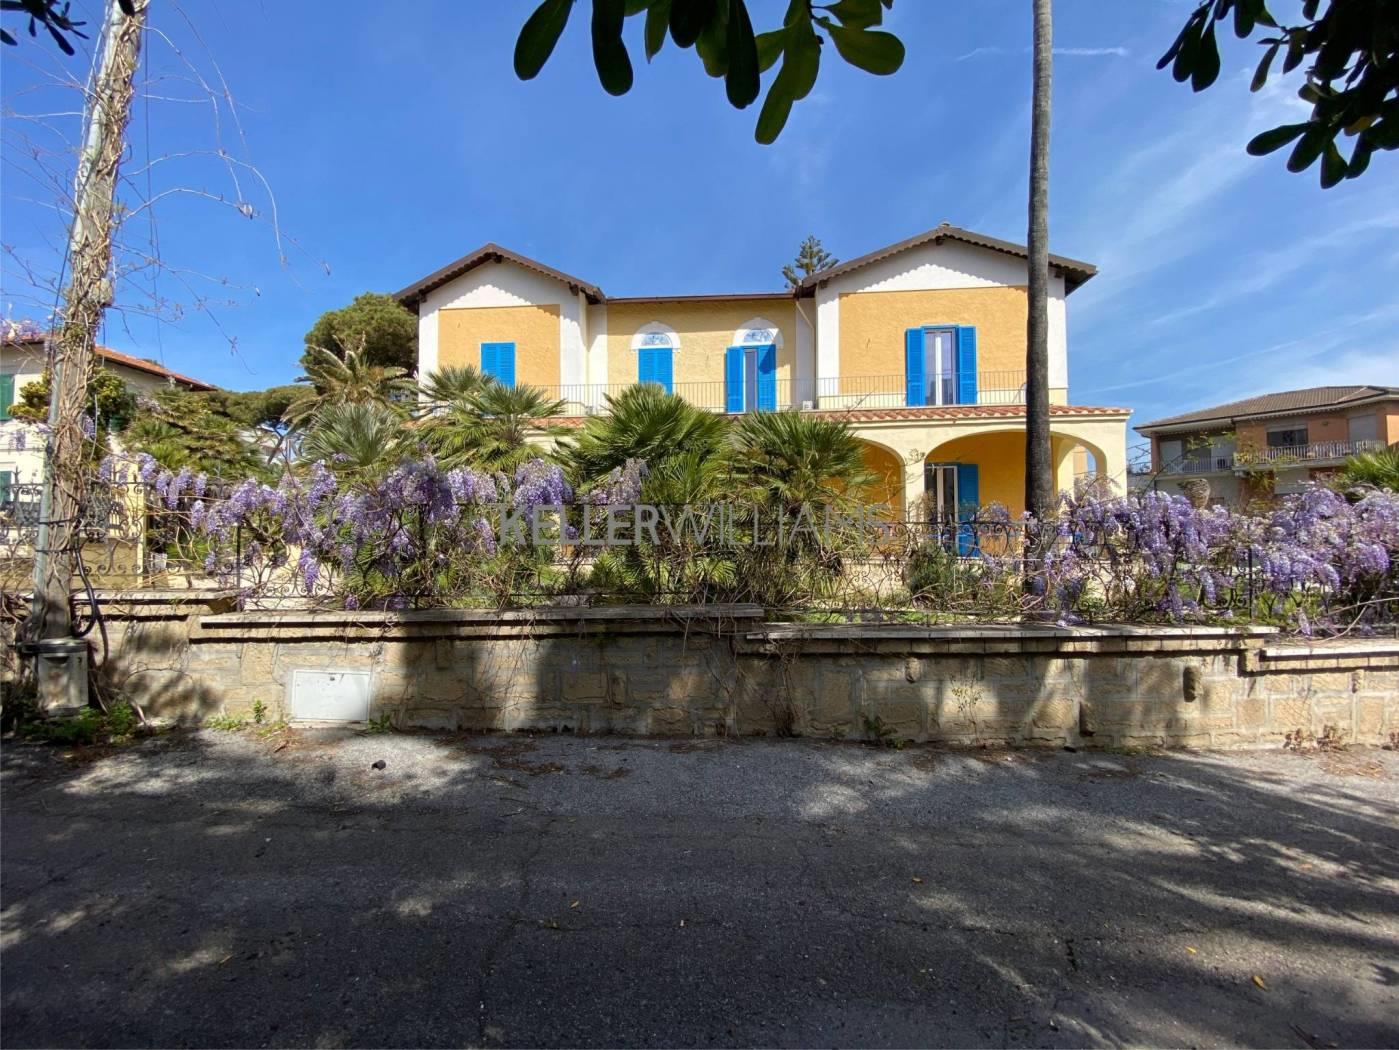 Elegante villa con giardino nel centro di Santa Marinella